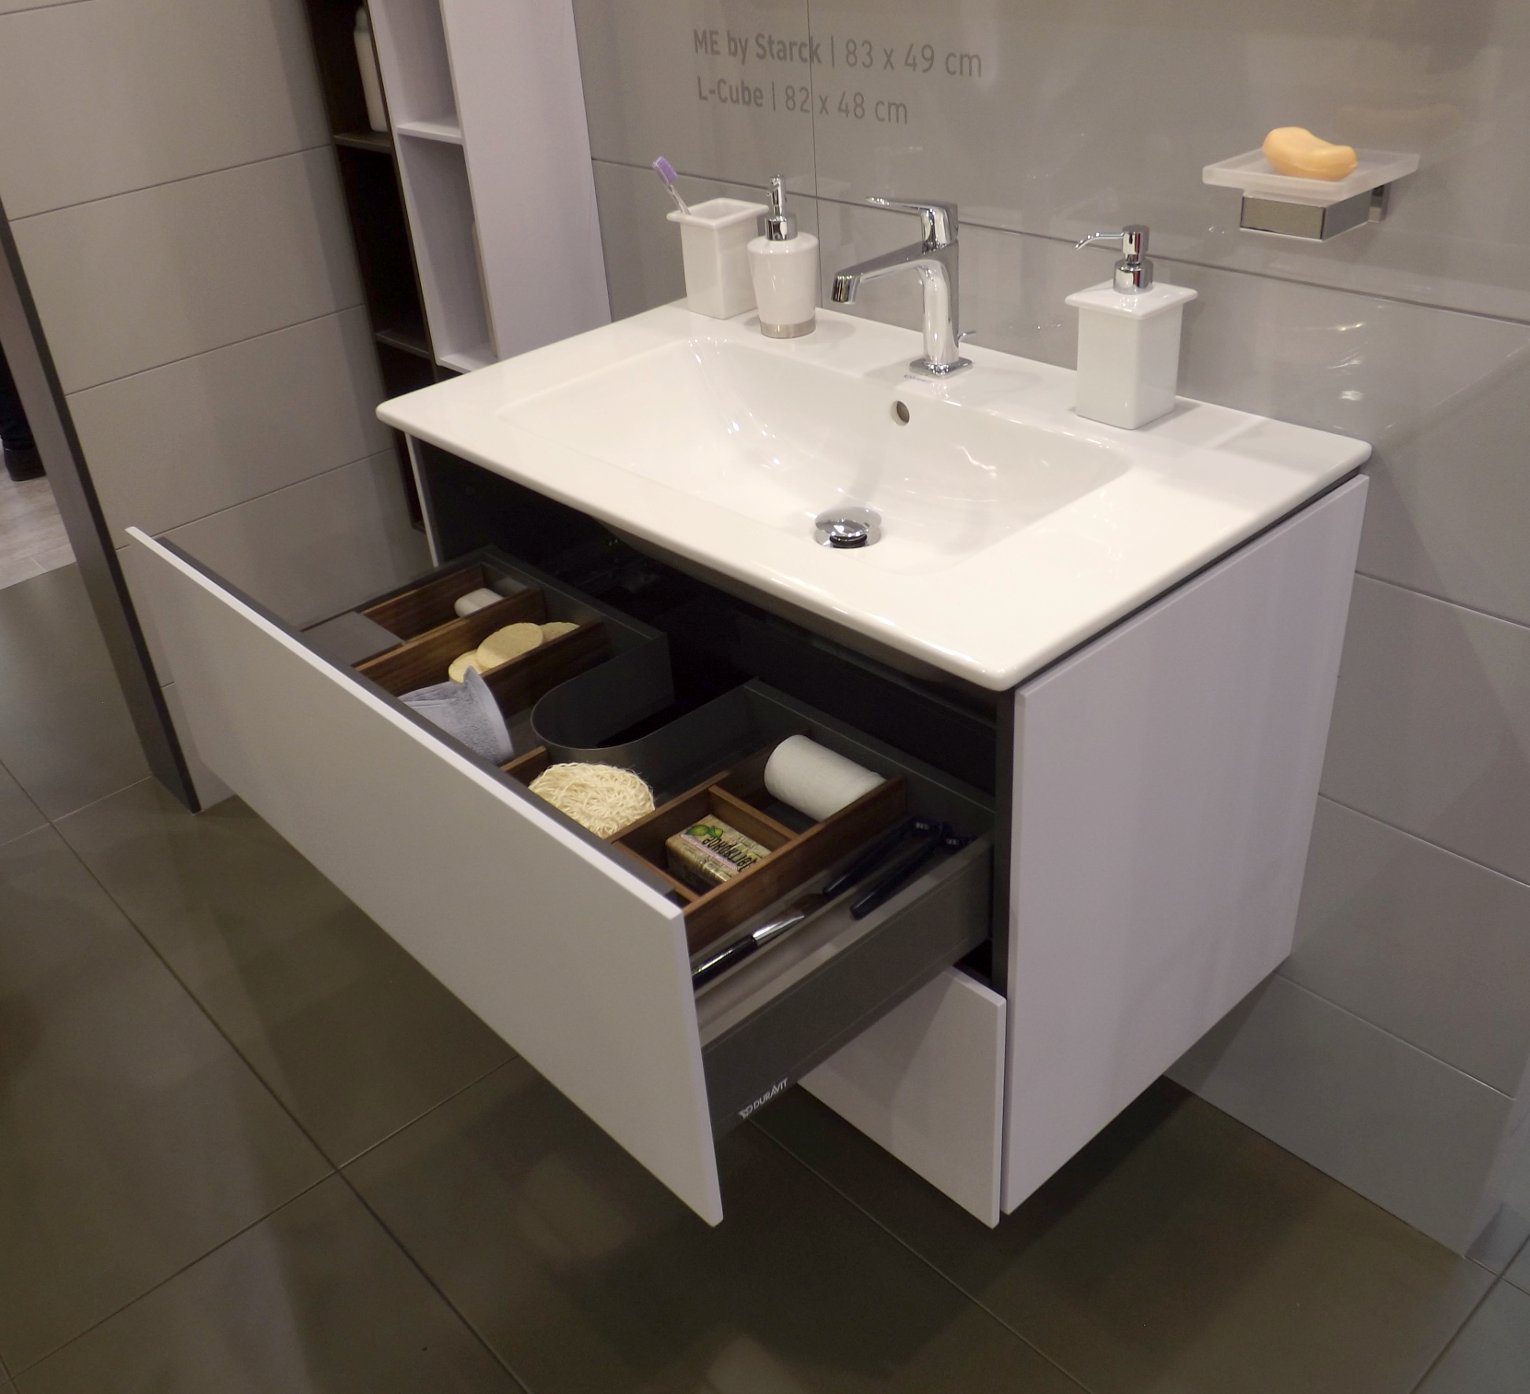 Мебель для ванной и зеркало L-Cube с раковиной ME by Starck от Duravit на выставке МосБилд 2015. Вид Б